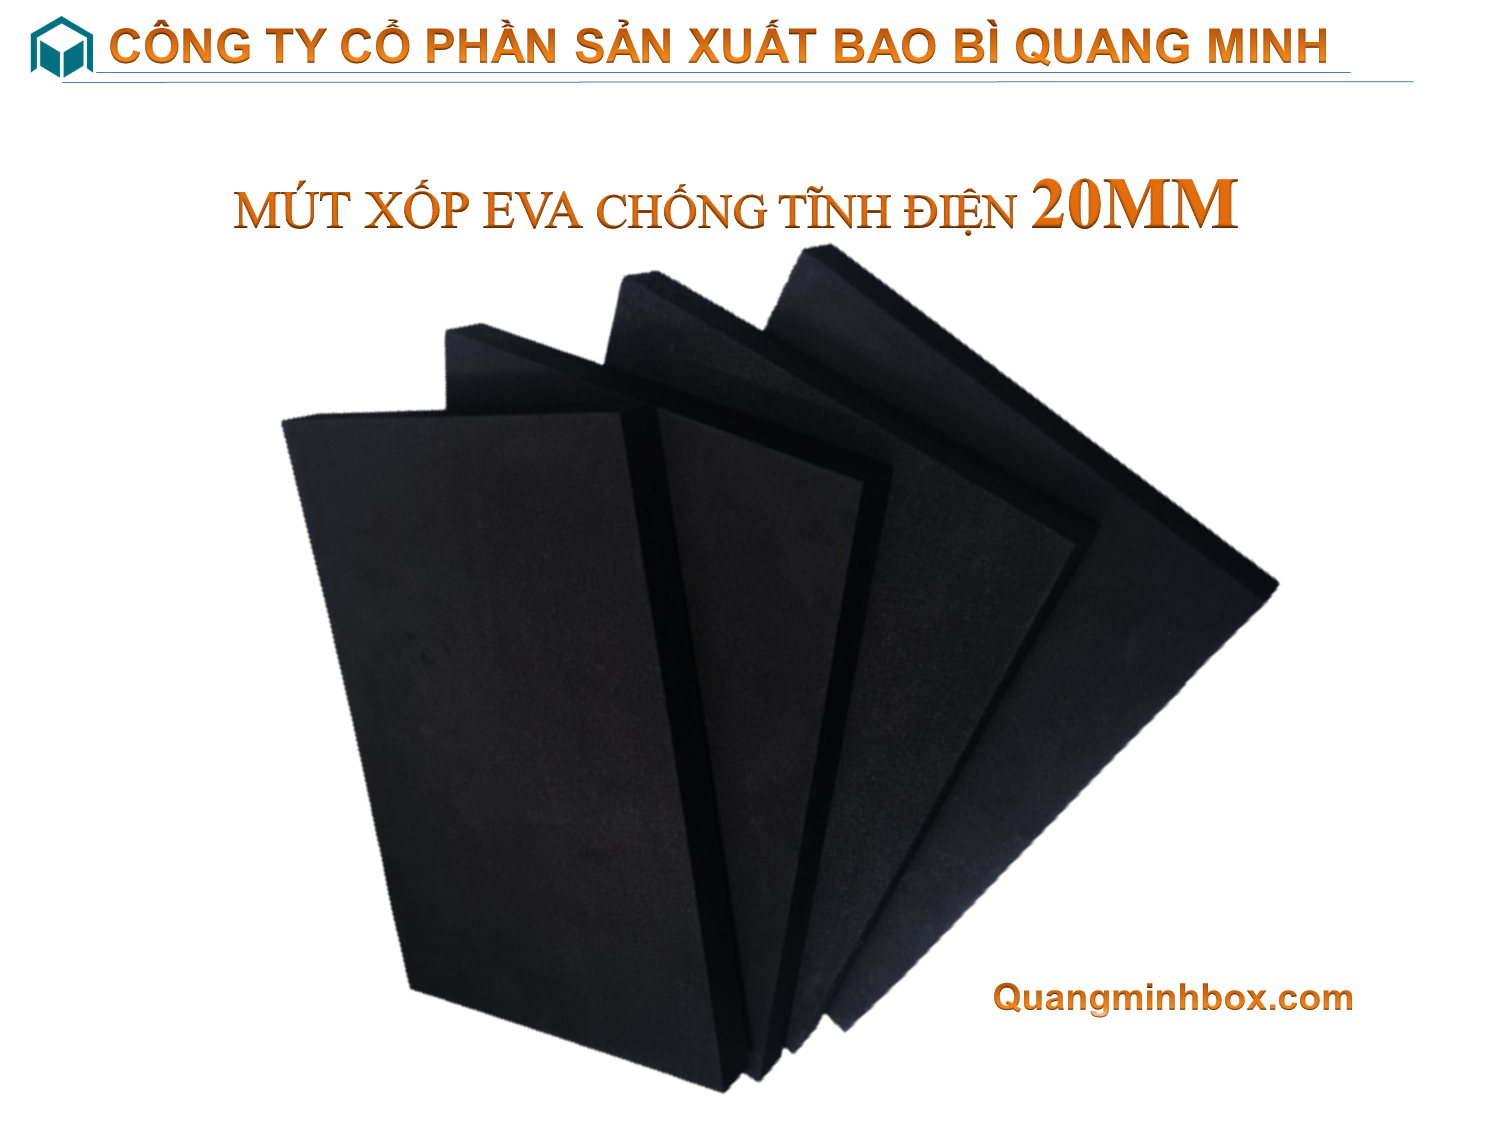 mut-xop-eva-chong-tinh-dien-20mm